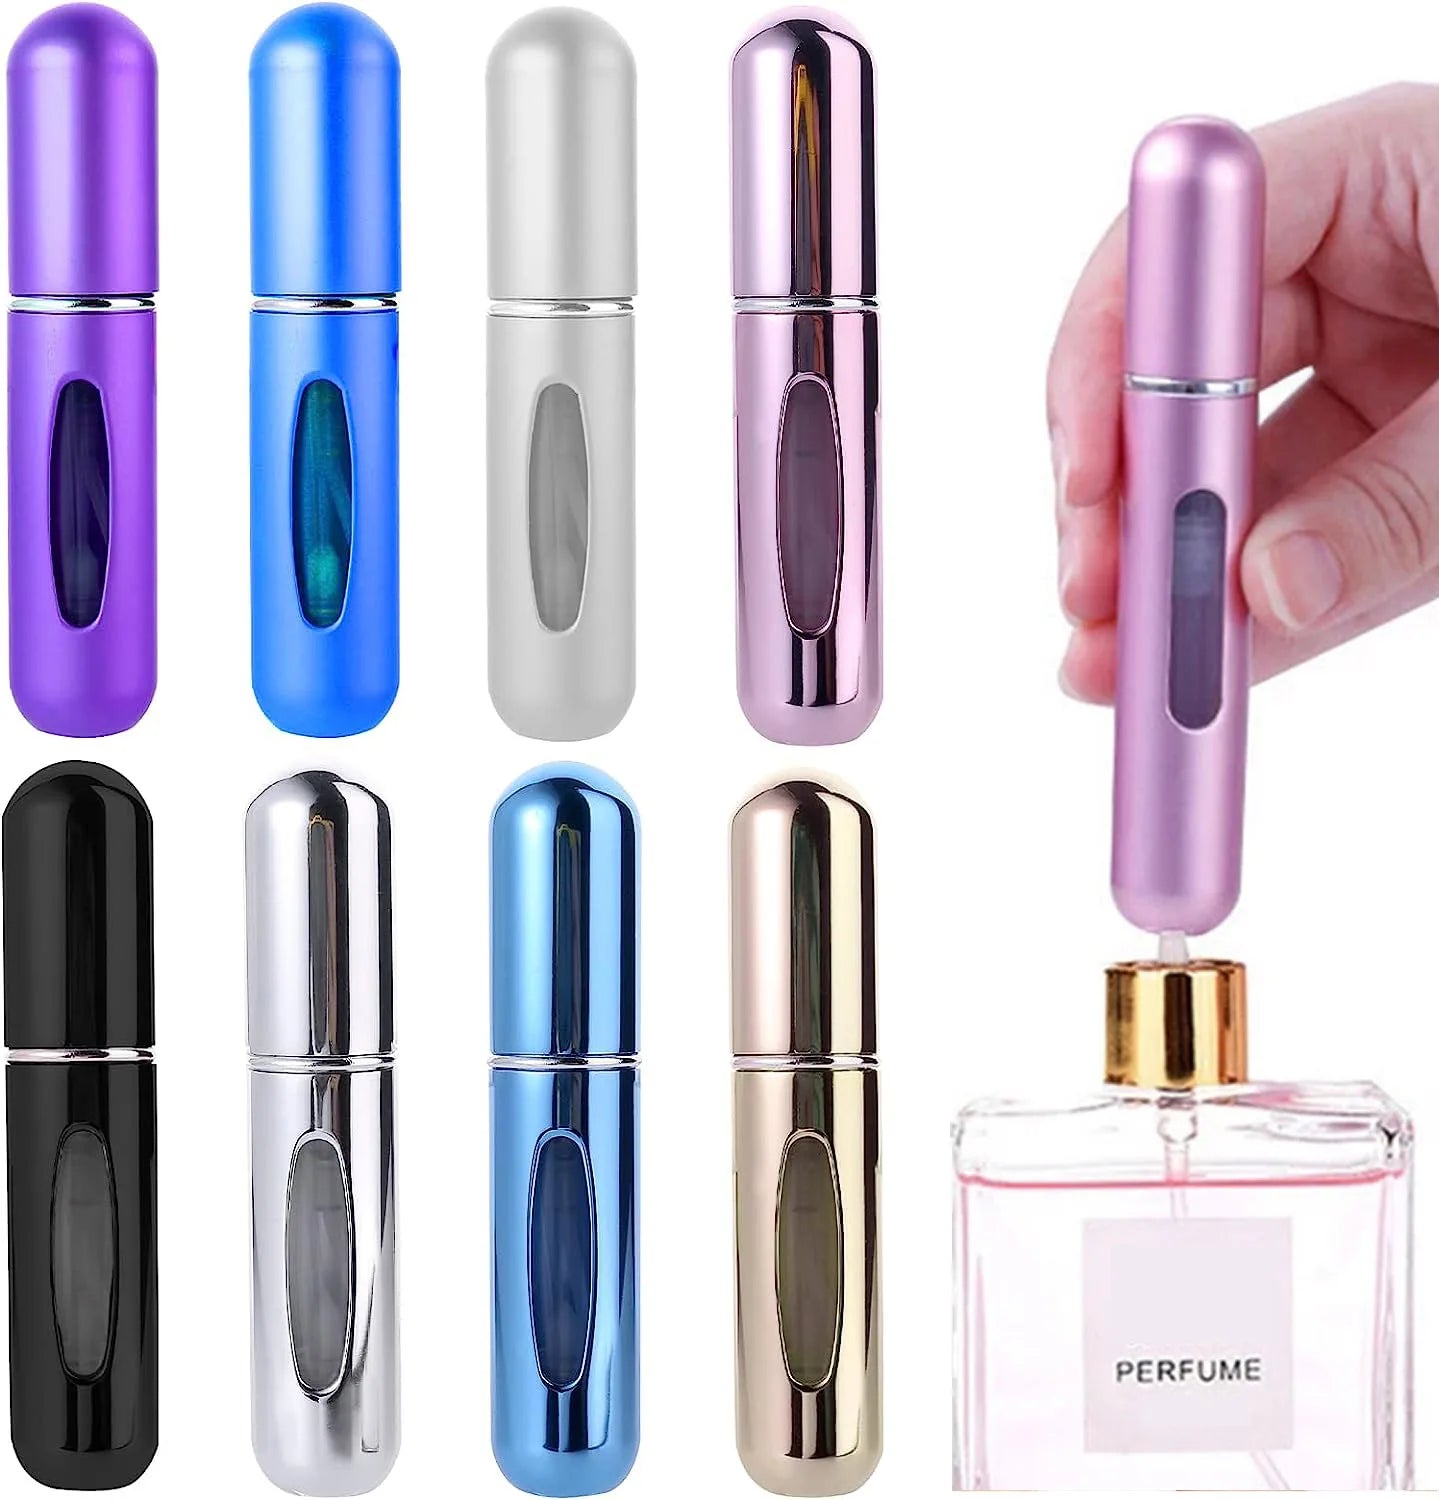 Mini Perfume Atomizer: Eco-Friendly Travel Spray Bottle